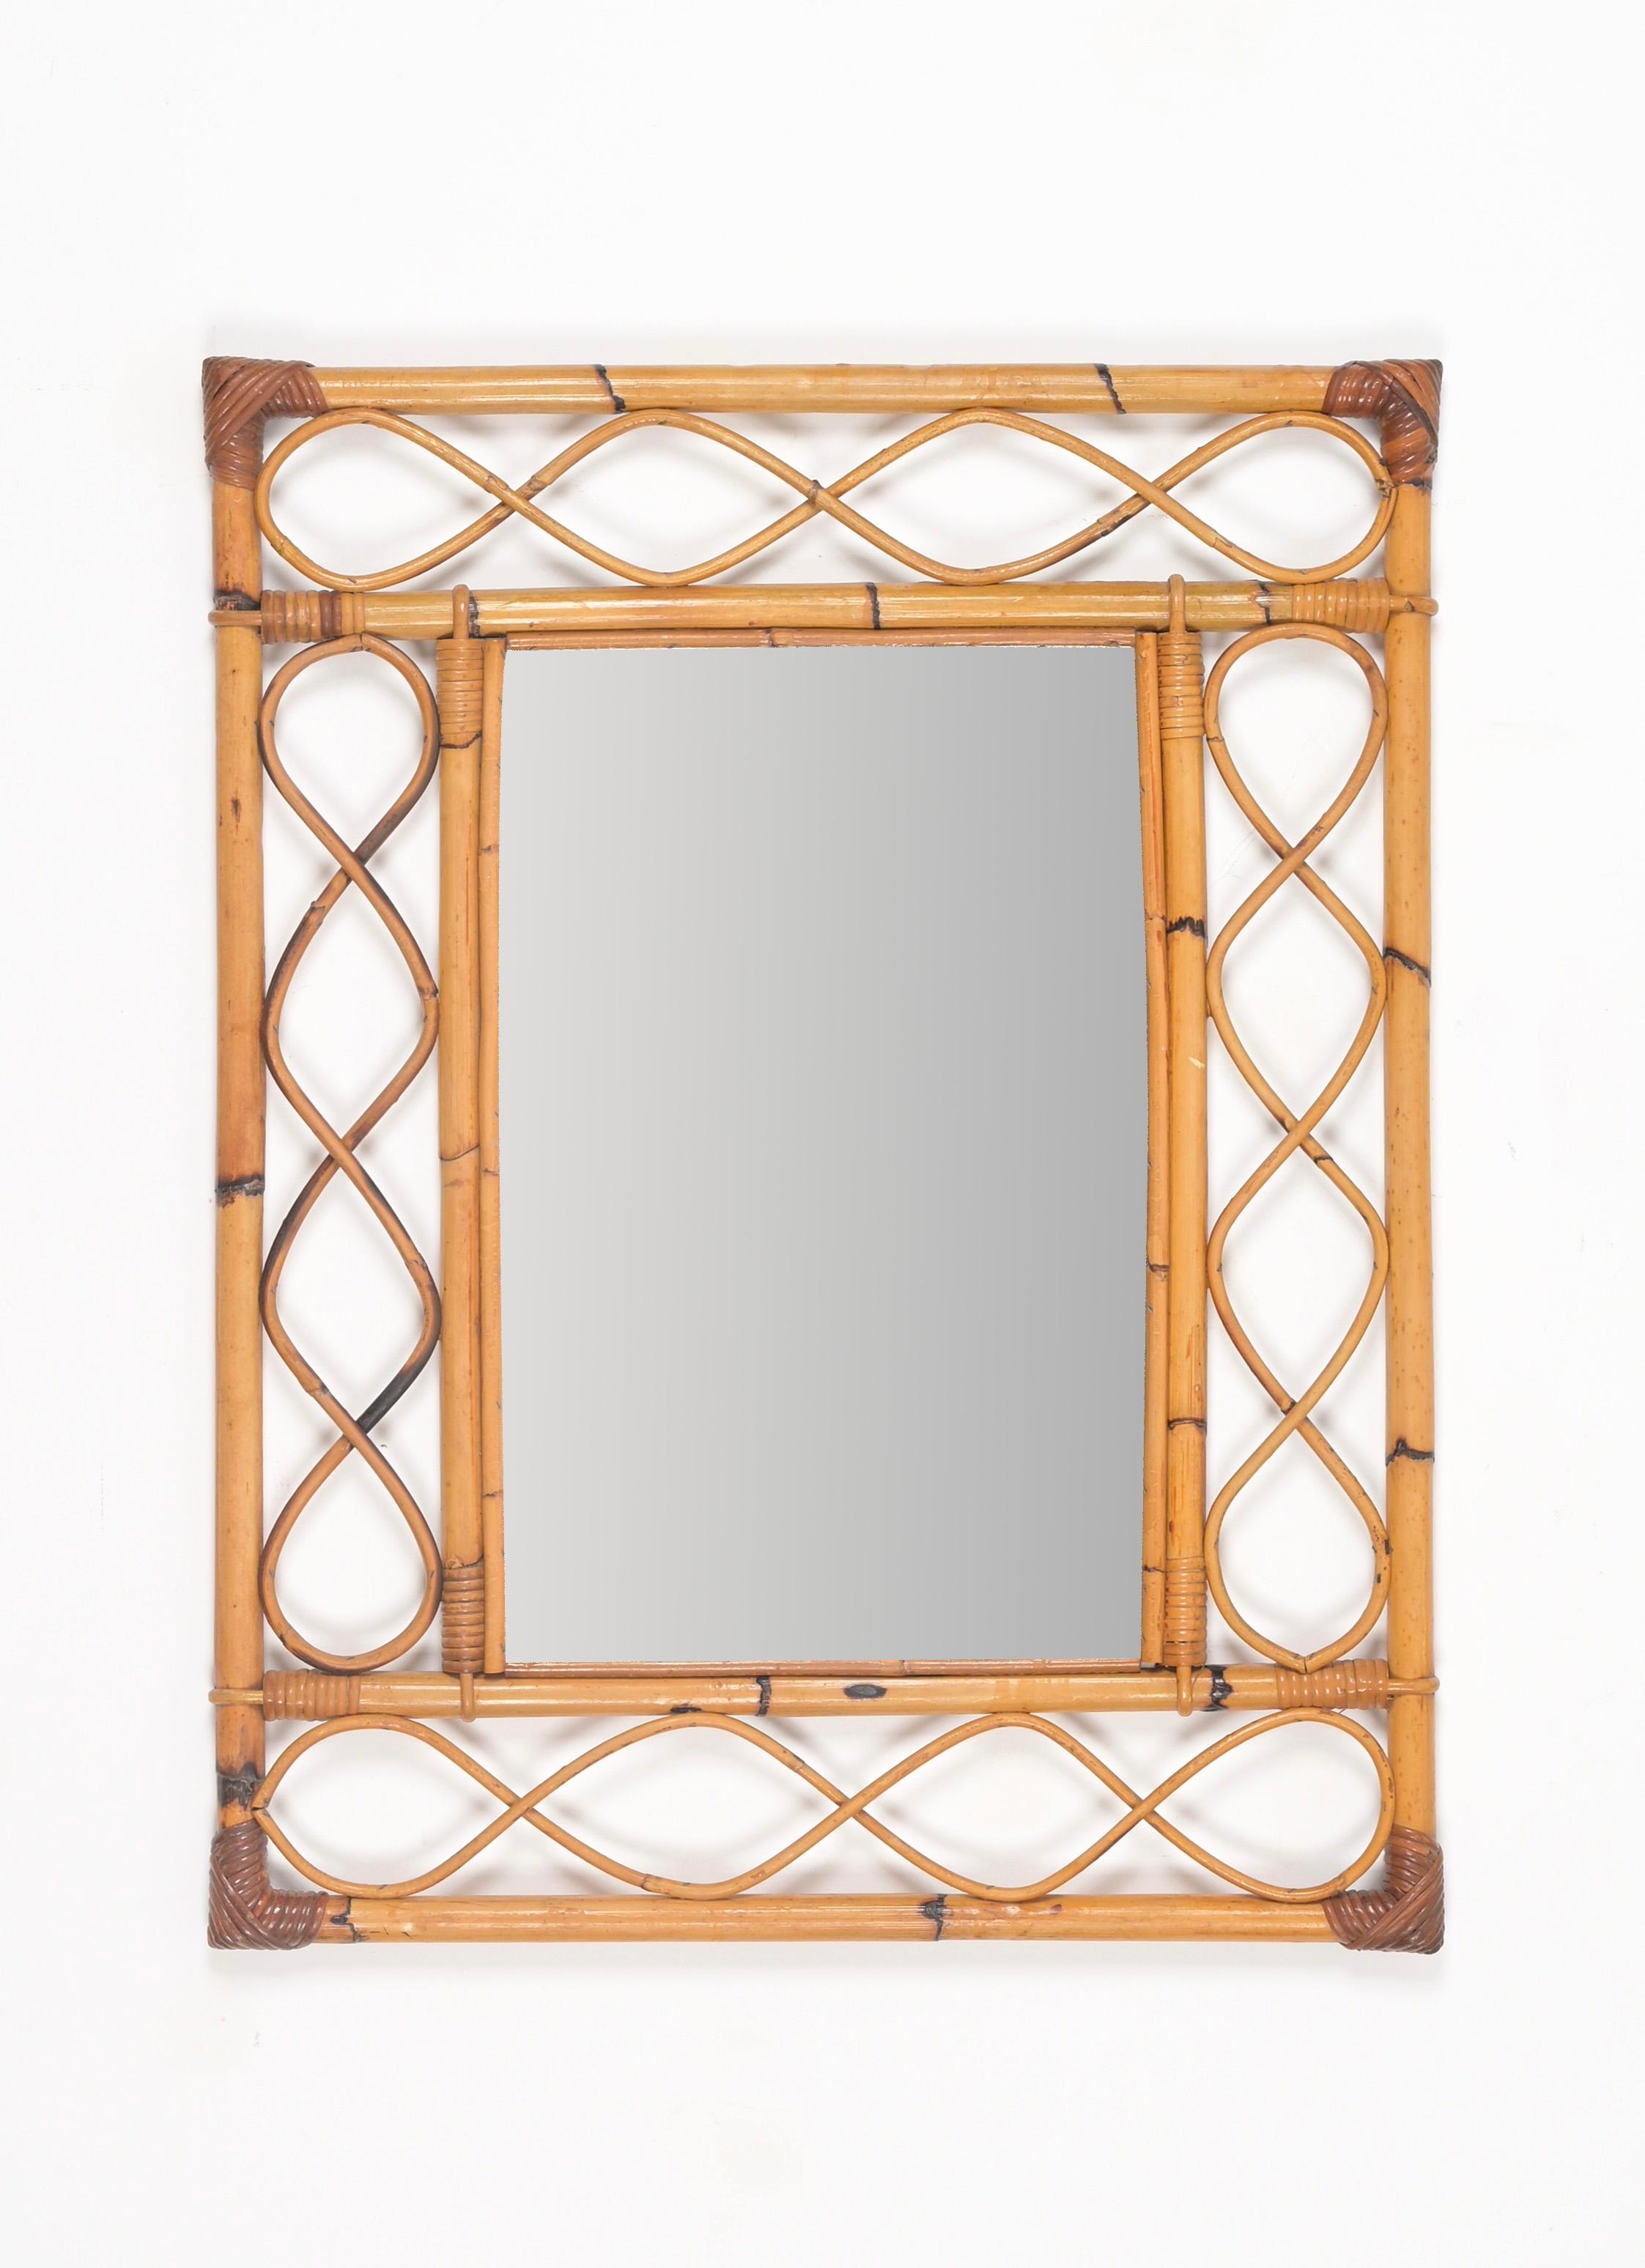 Schöner rechteckiger Wandspiegel im Côte d'Azur-Stil aus Bambus, gebogenem Rattan und handgeflochtener Weide. Dieser spektakuläre große Spiegel wurde in den 1960er Jahren in Italien hergestellt.

Dieser bezaubernde Spiegel hat einen doppelten